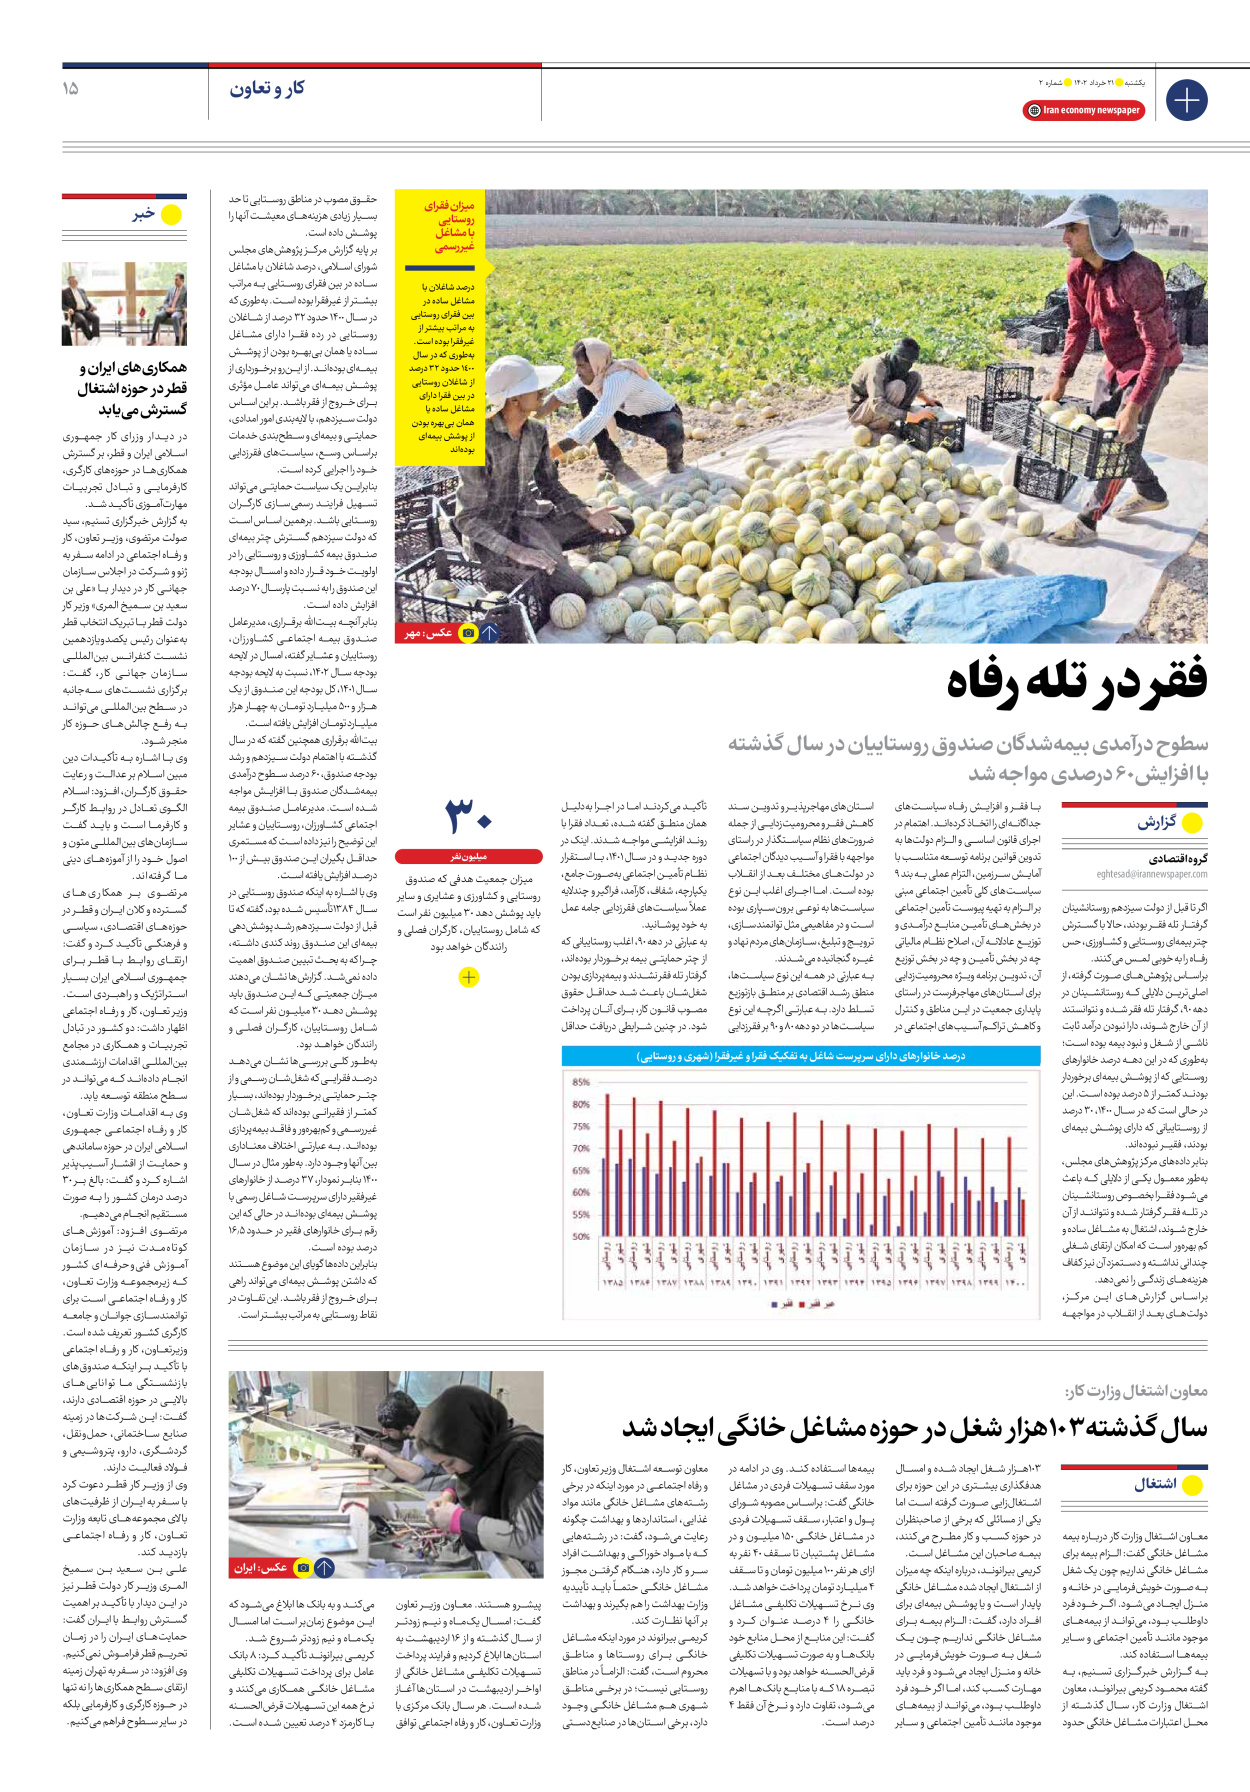 روزنامه ایران اقتصادی - شماره دو - ۲۱ خرداد ۱۴۰۲ - صفحه ۱۵